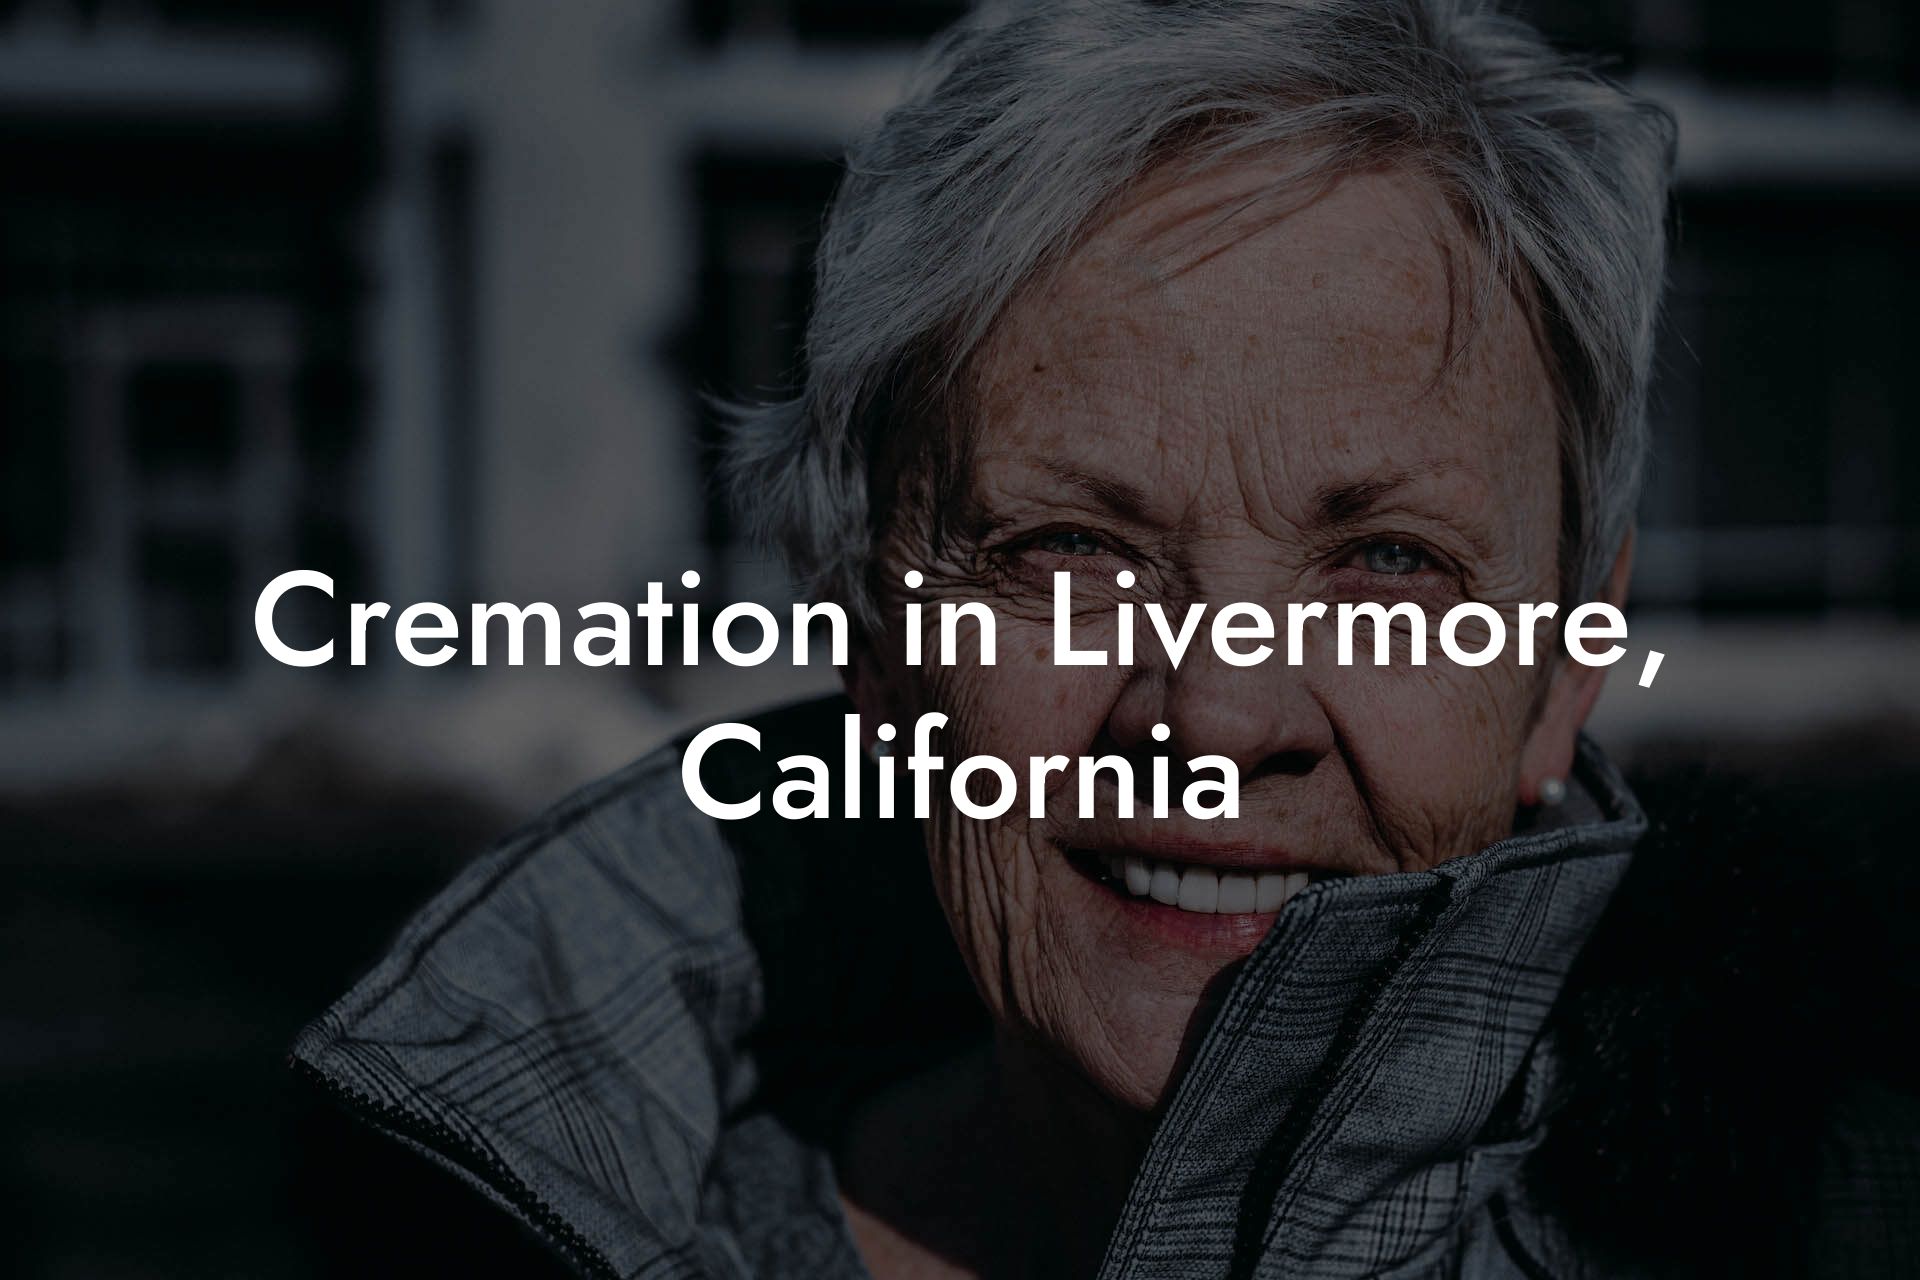 Cremation in Livermore, California